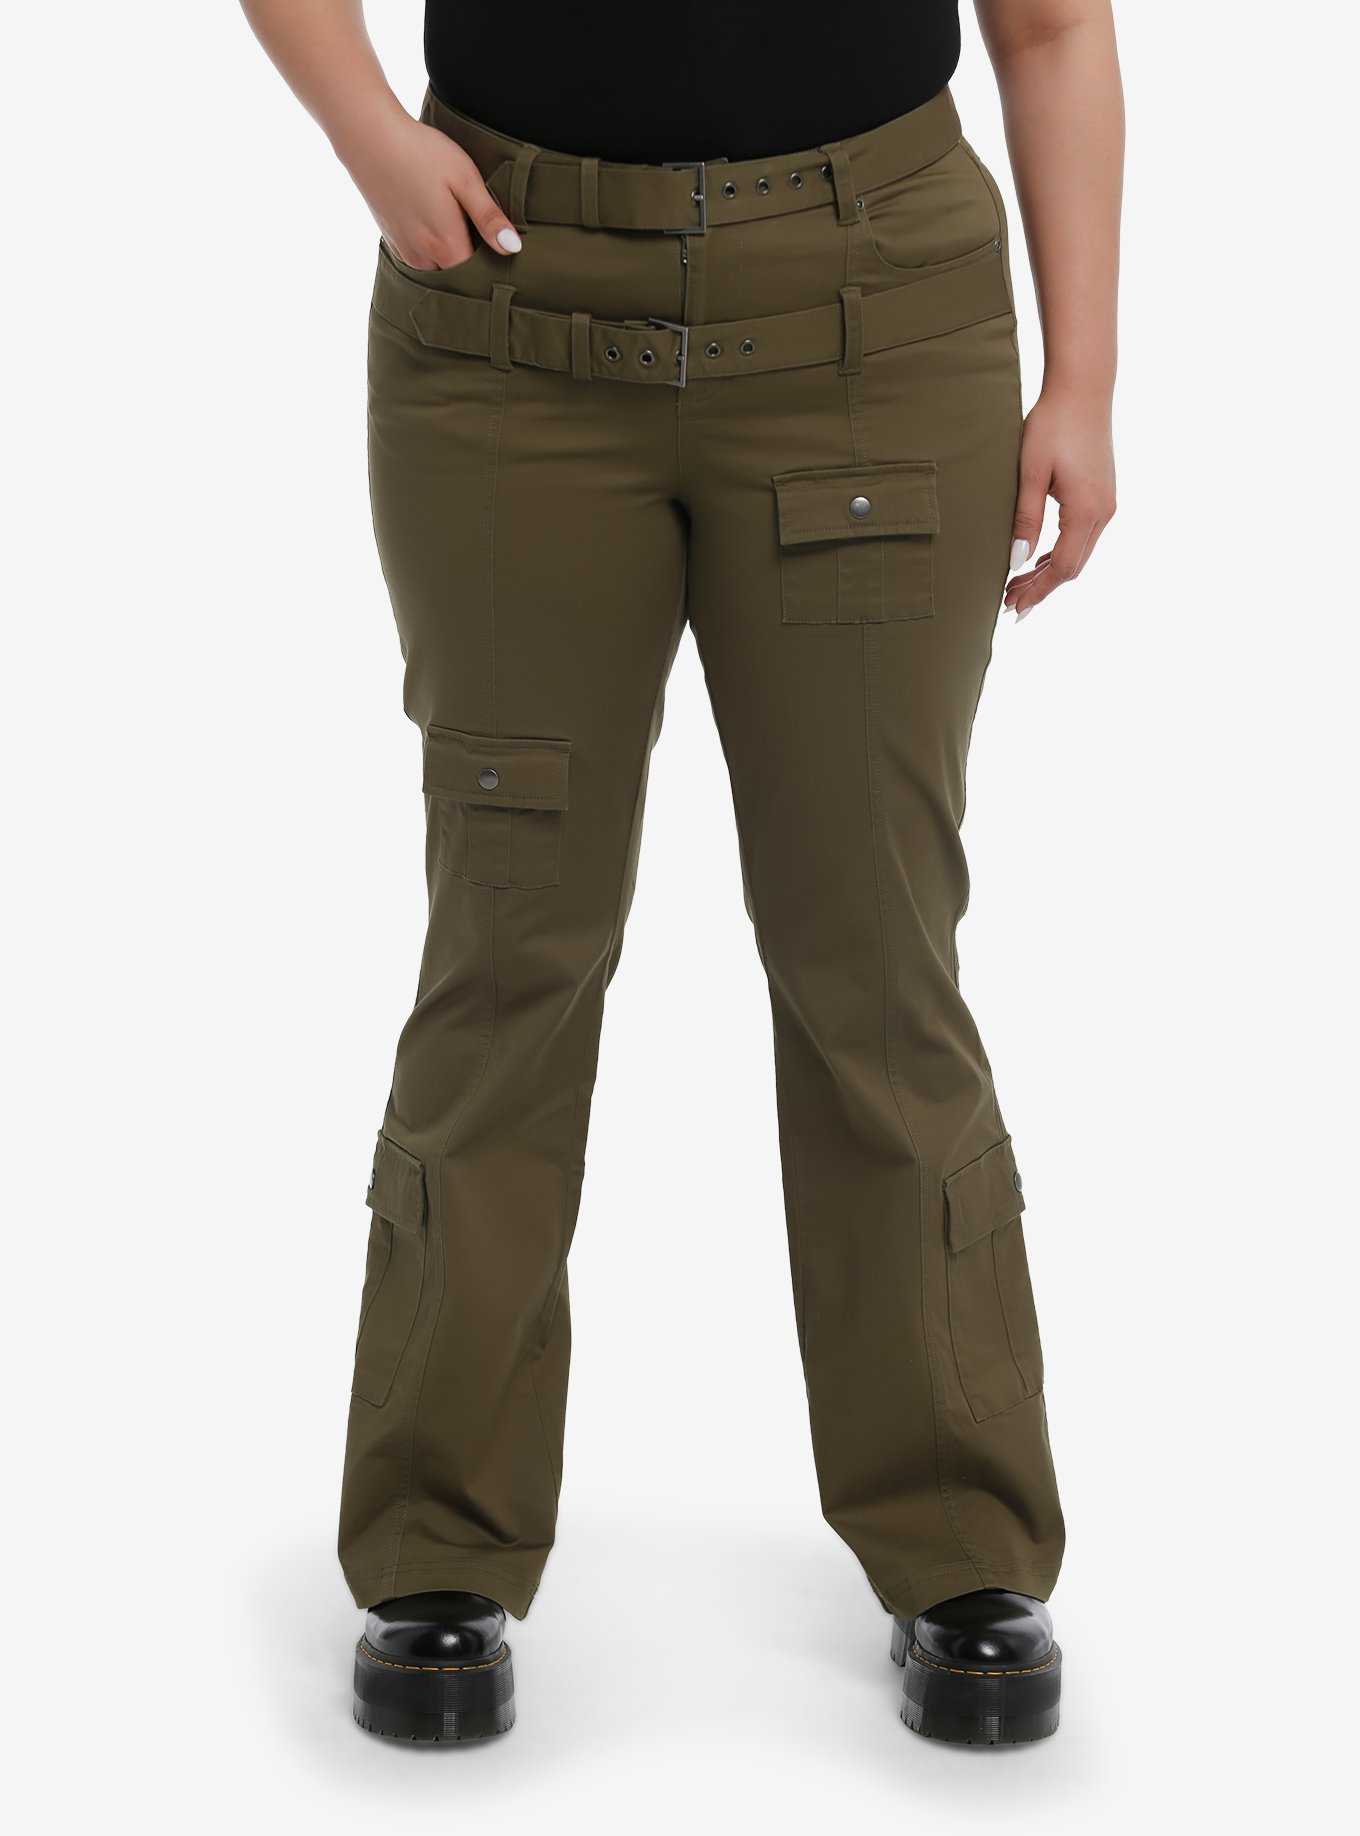 Khaki Belted Cargo Pants Plus Size